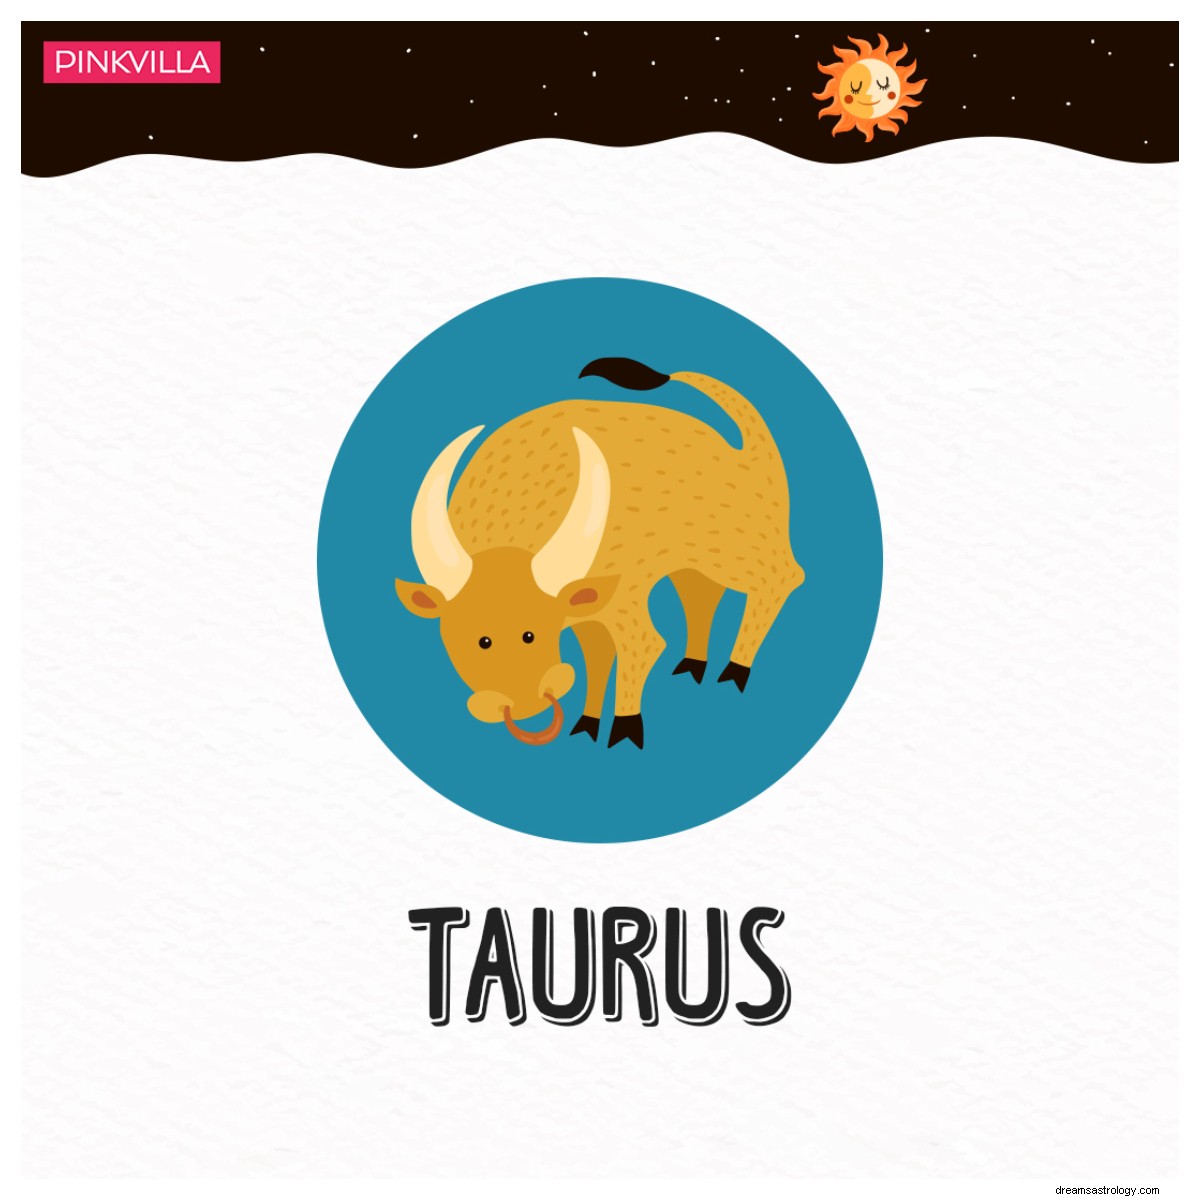 De Aries a Capricornio:4 signos del zodiaco que se mantienen cerca de sus mamás 